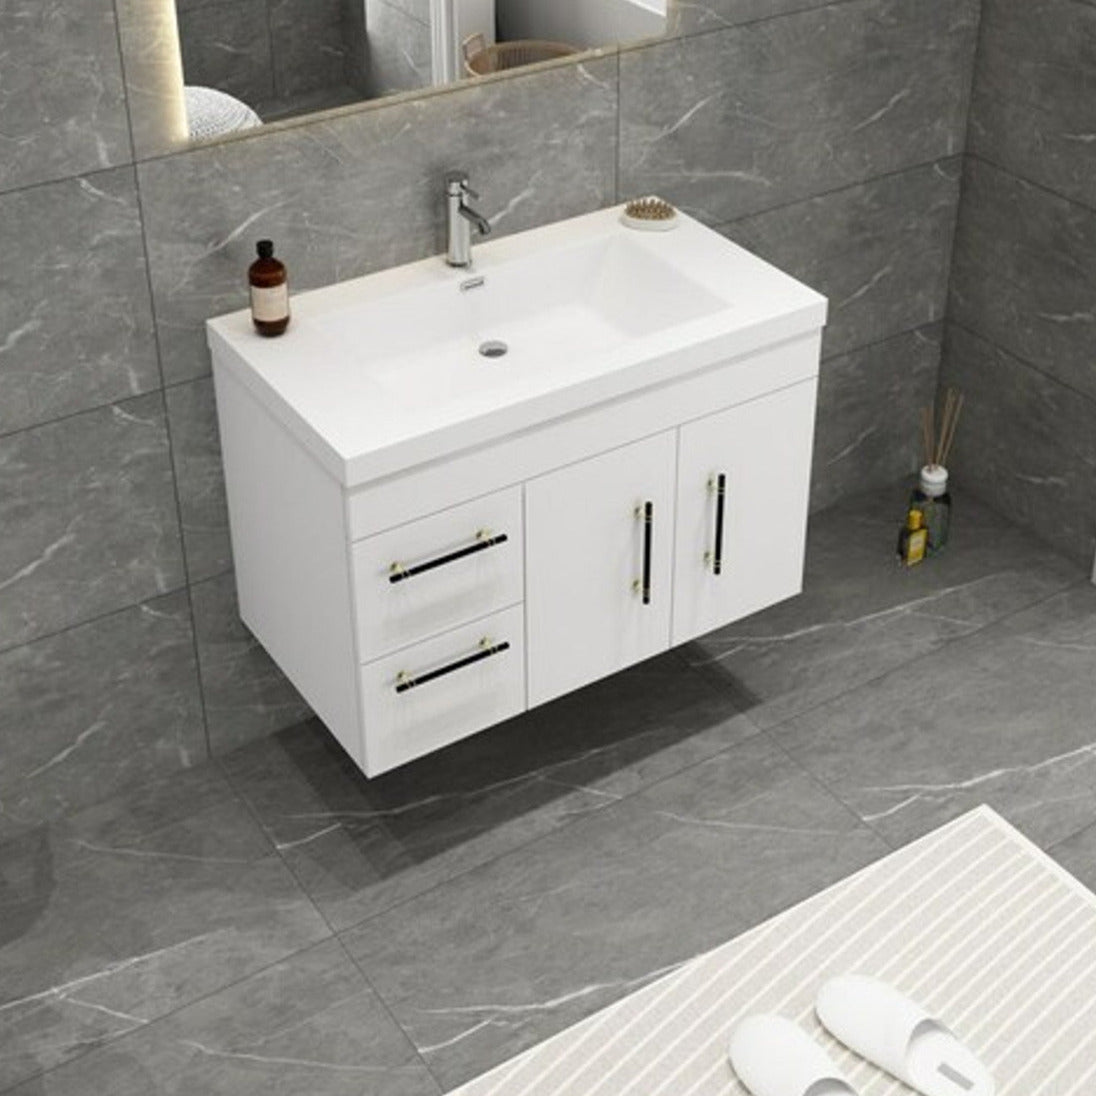 Elsa 36" Wall Mounted Bathroom Vanity with Reinforced Acrylic Sink